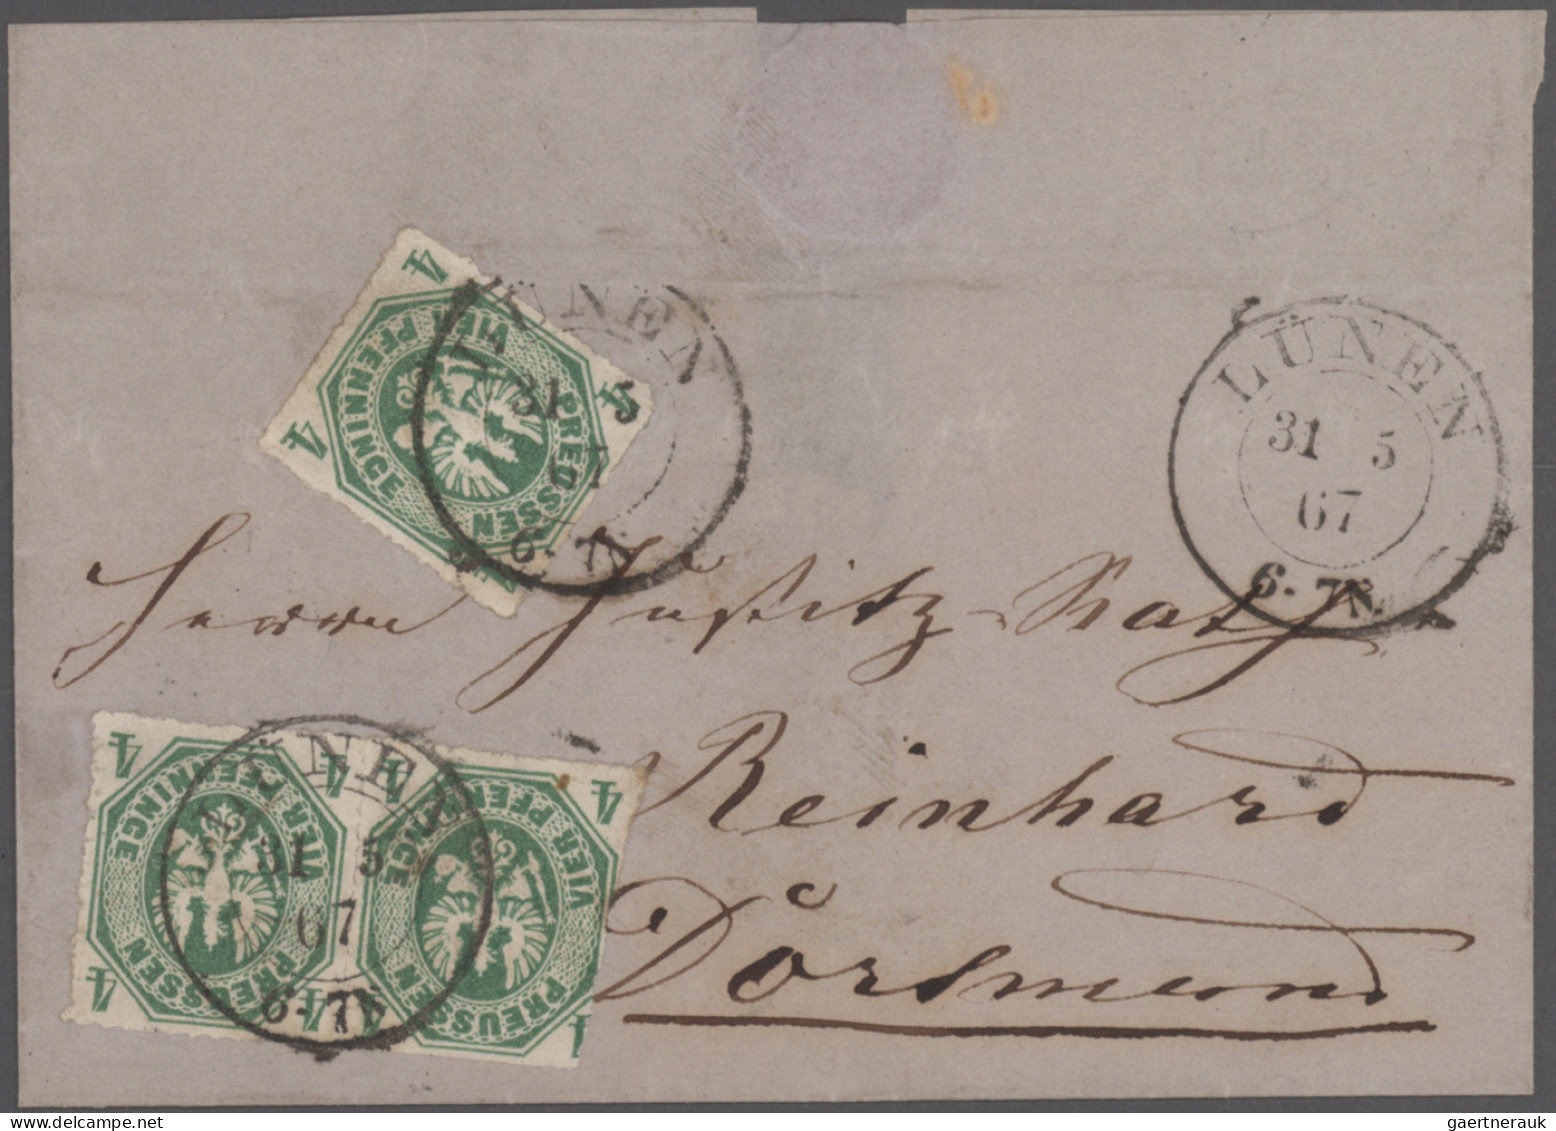 Preußen - Marken und Briefe: 1850/68, kleine Heimatsammlung der OPD Arnsberg mit